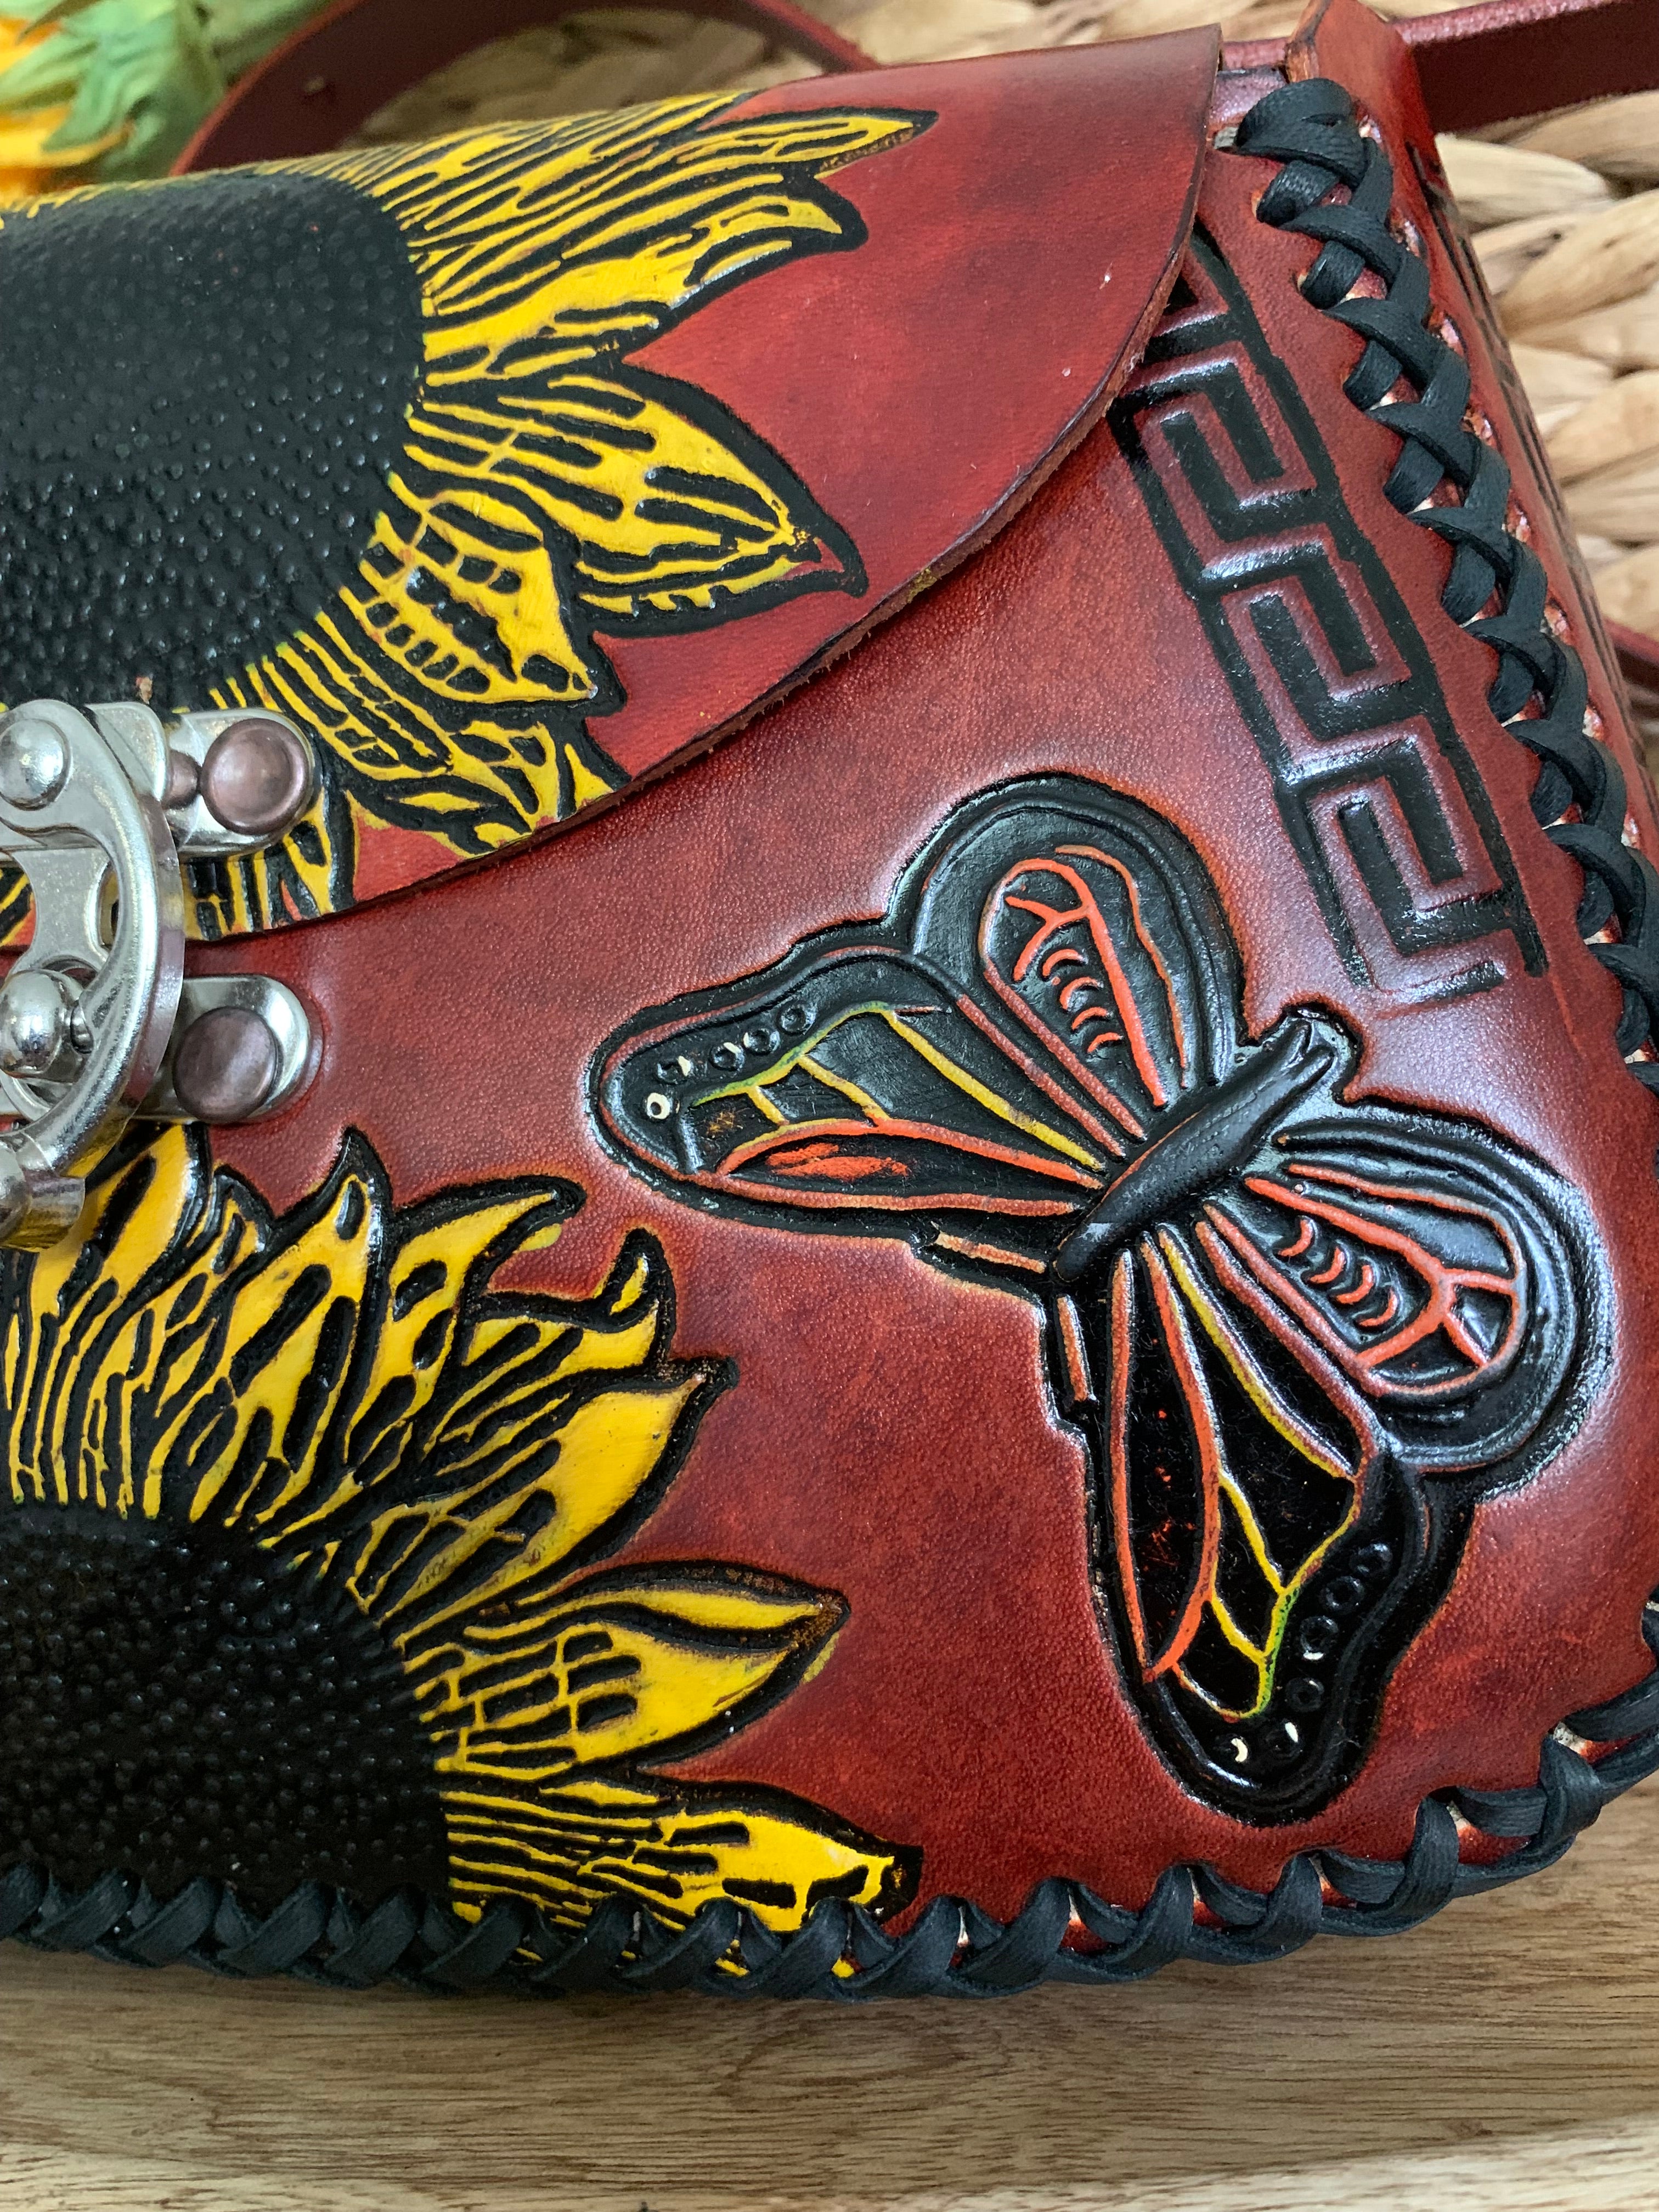 Butterfly Handbag | injetprint.com